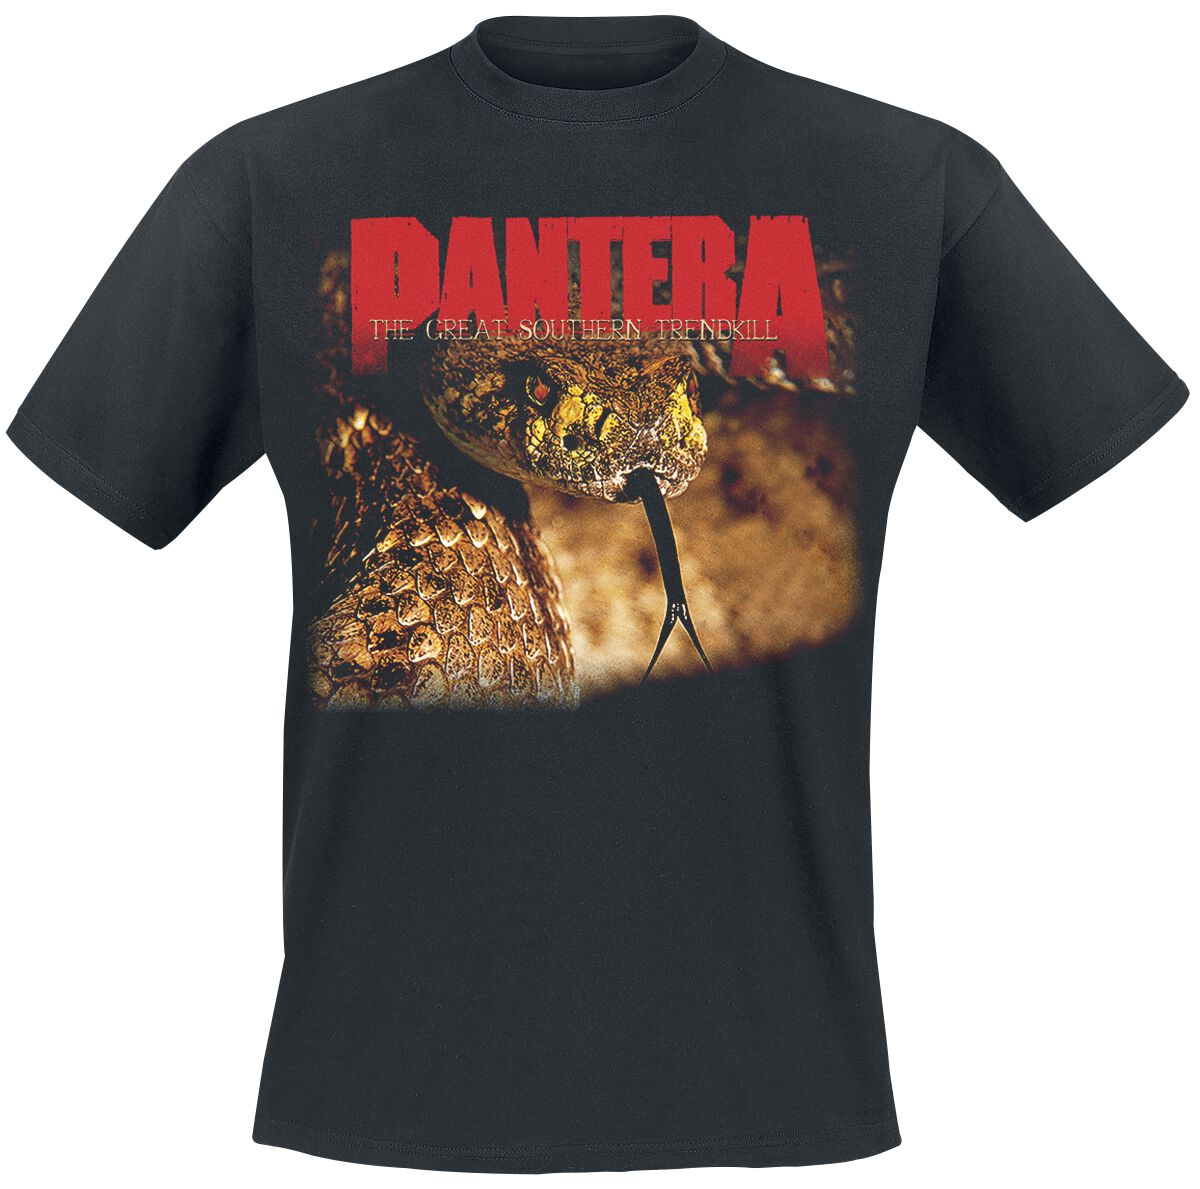 Pantera T-Shirt - The Great Southern Trendkill - S bis XXL - für Männer - Größe XL - schwarz  - Lizenziertes Merchandise!